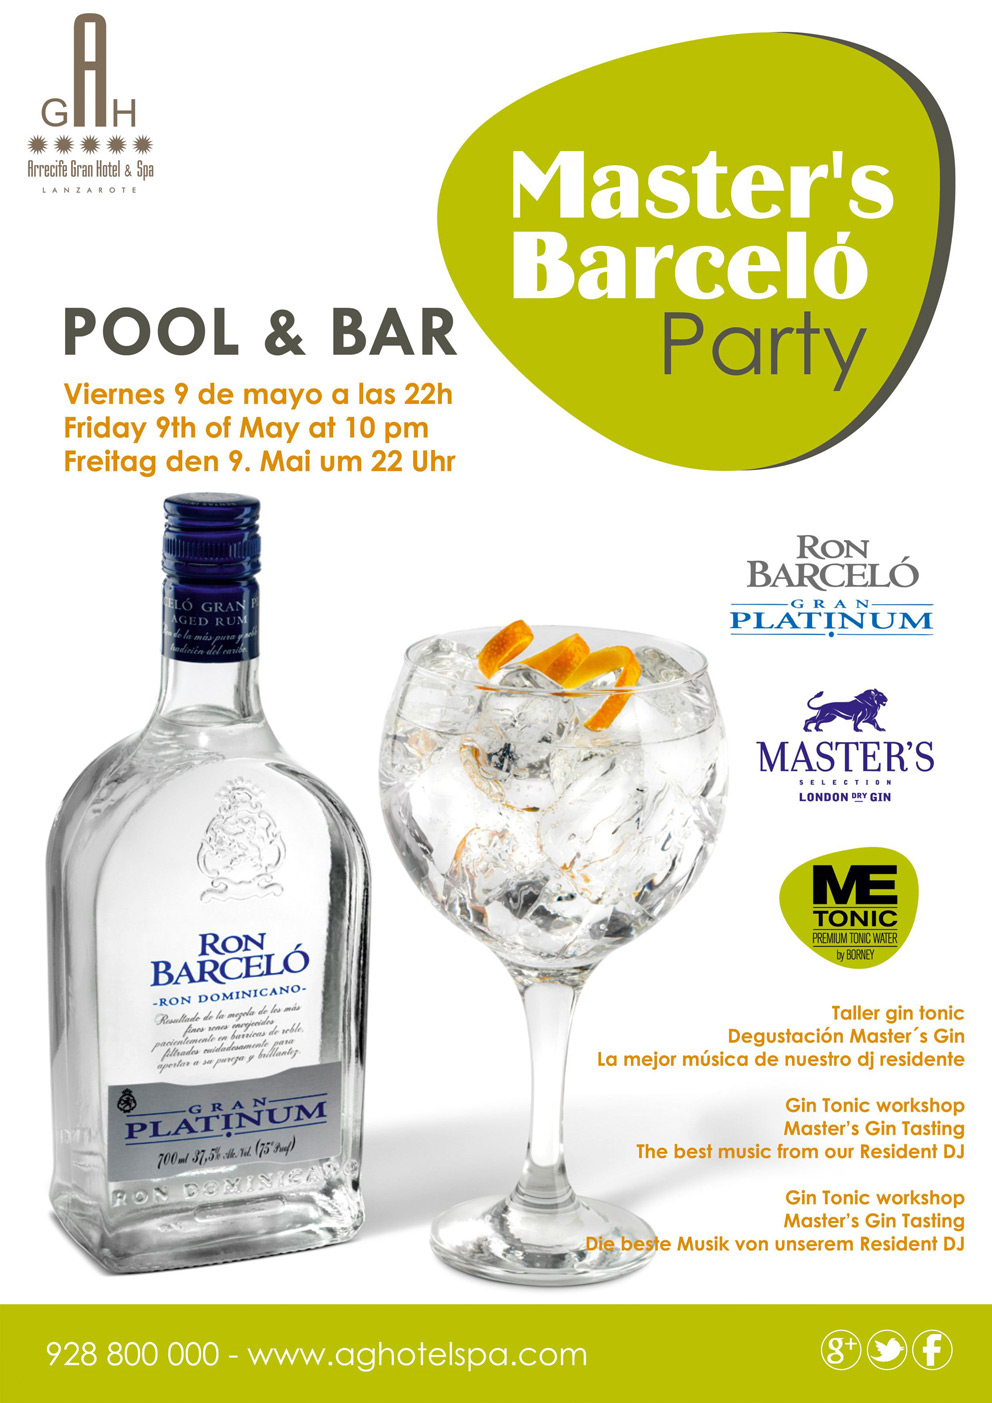 Master's Barcelo Party en el Arrecife Gran Hotel & Spa